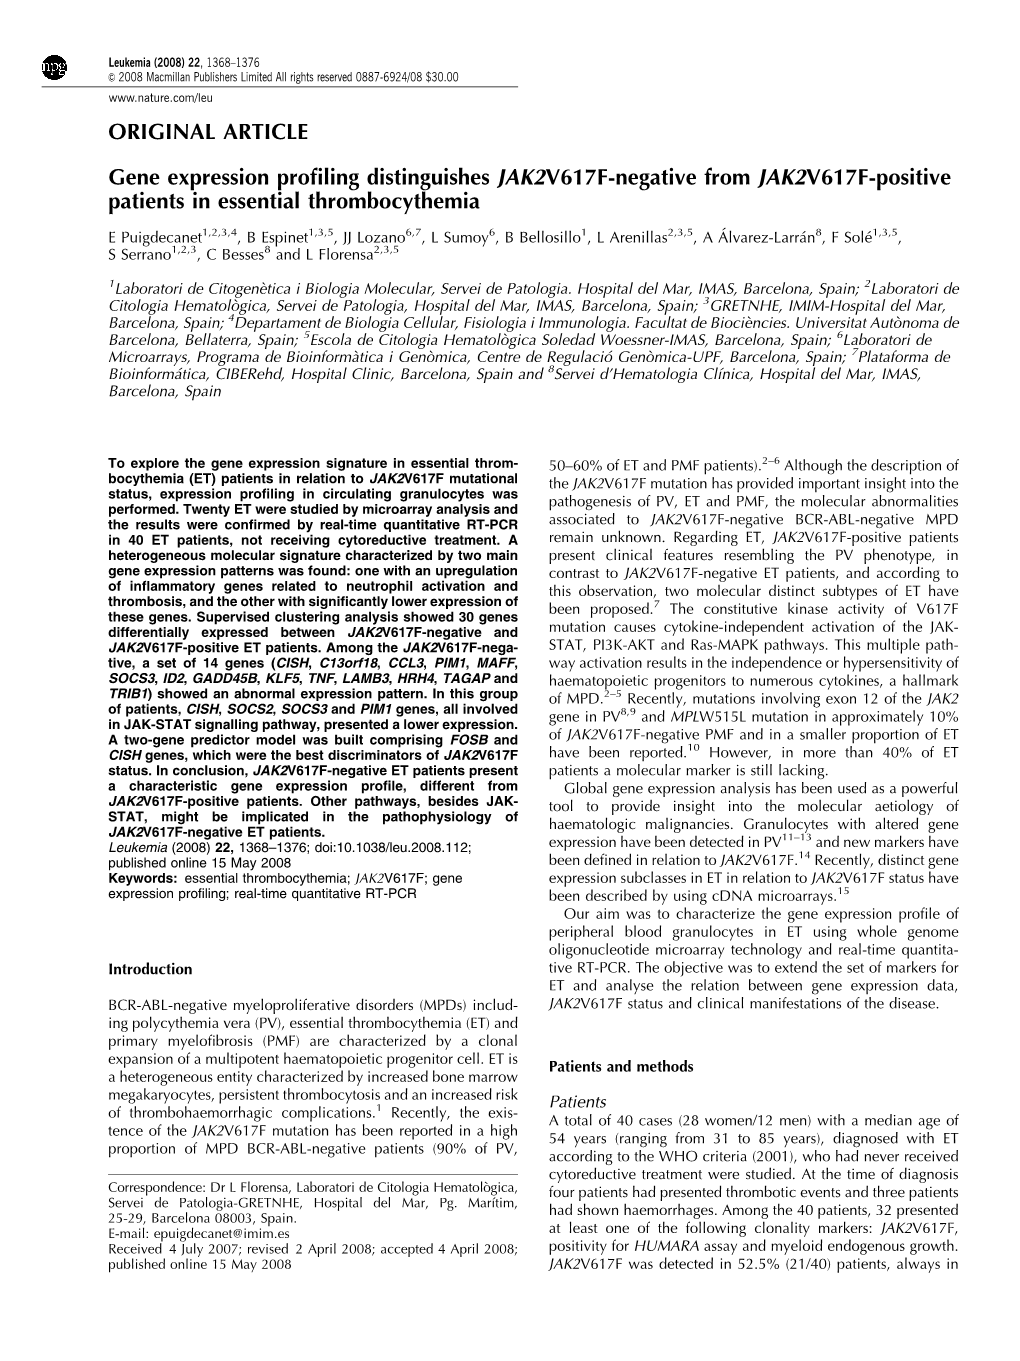 Gene Expression Profiling Distinguishes JAK2 V617F-Negative